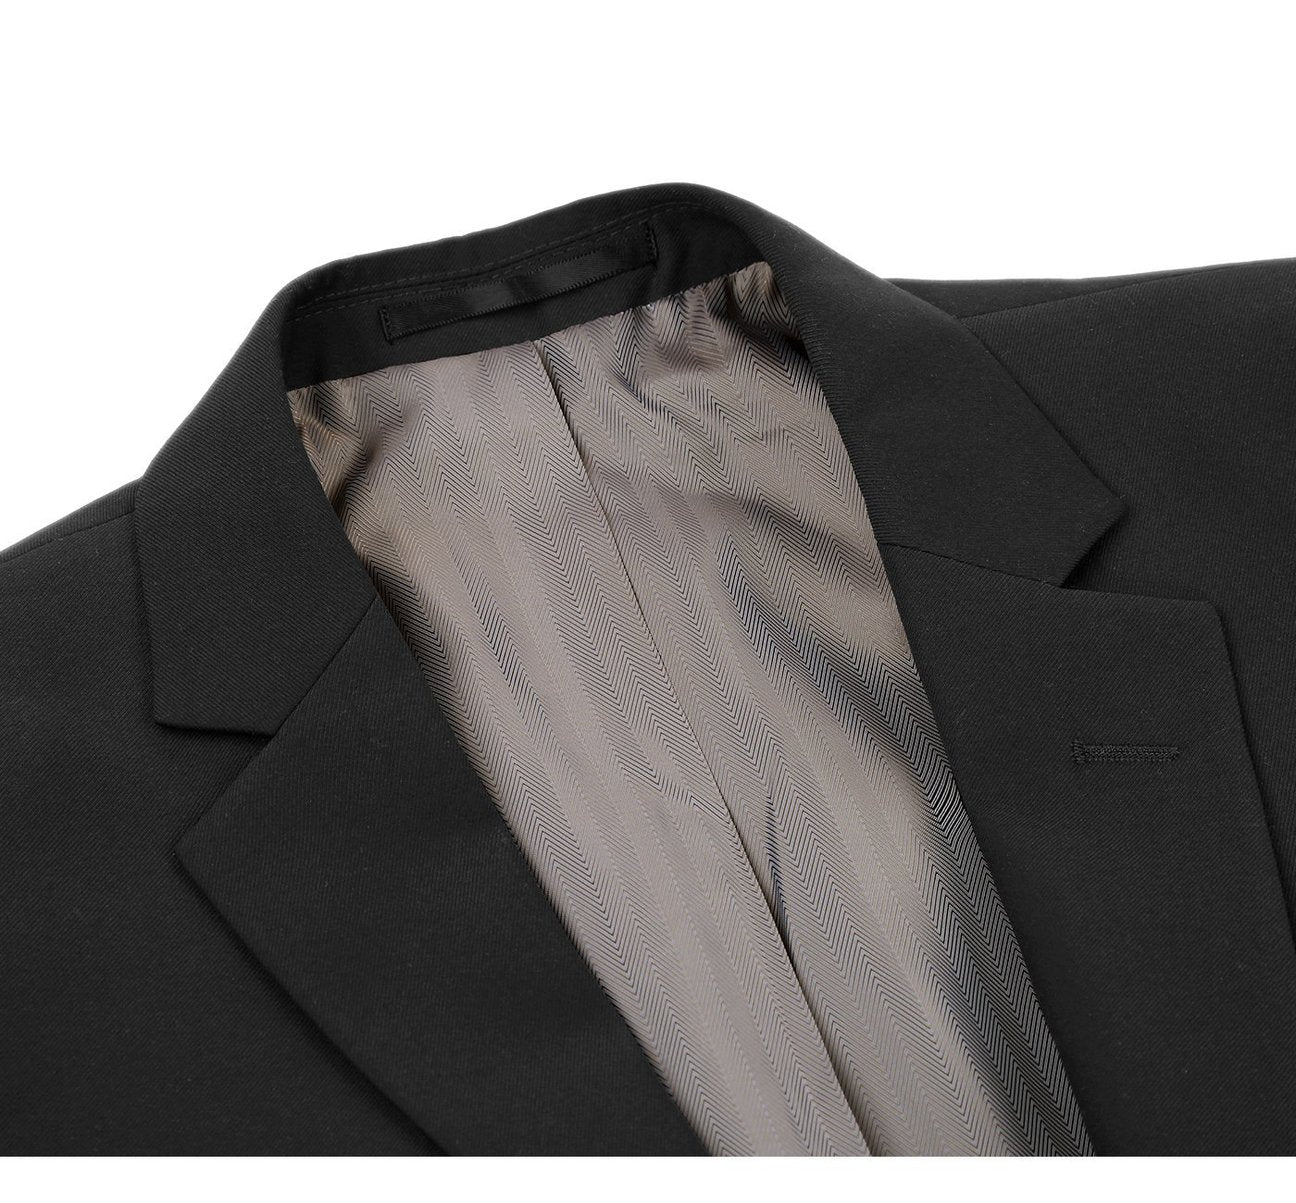 RENOIR Black 2-Piece Slim Fit Notch Lapel Wool Suit 508-1